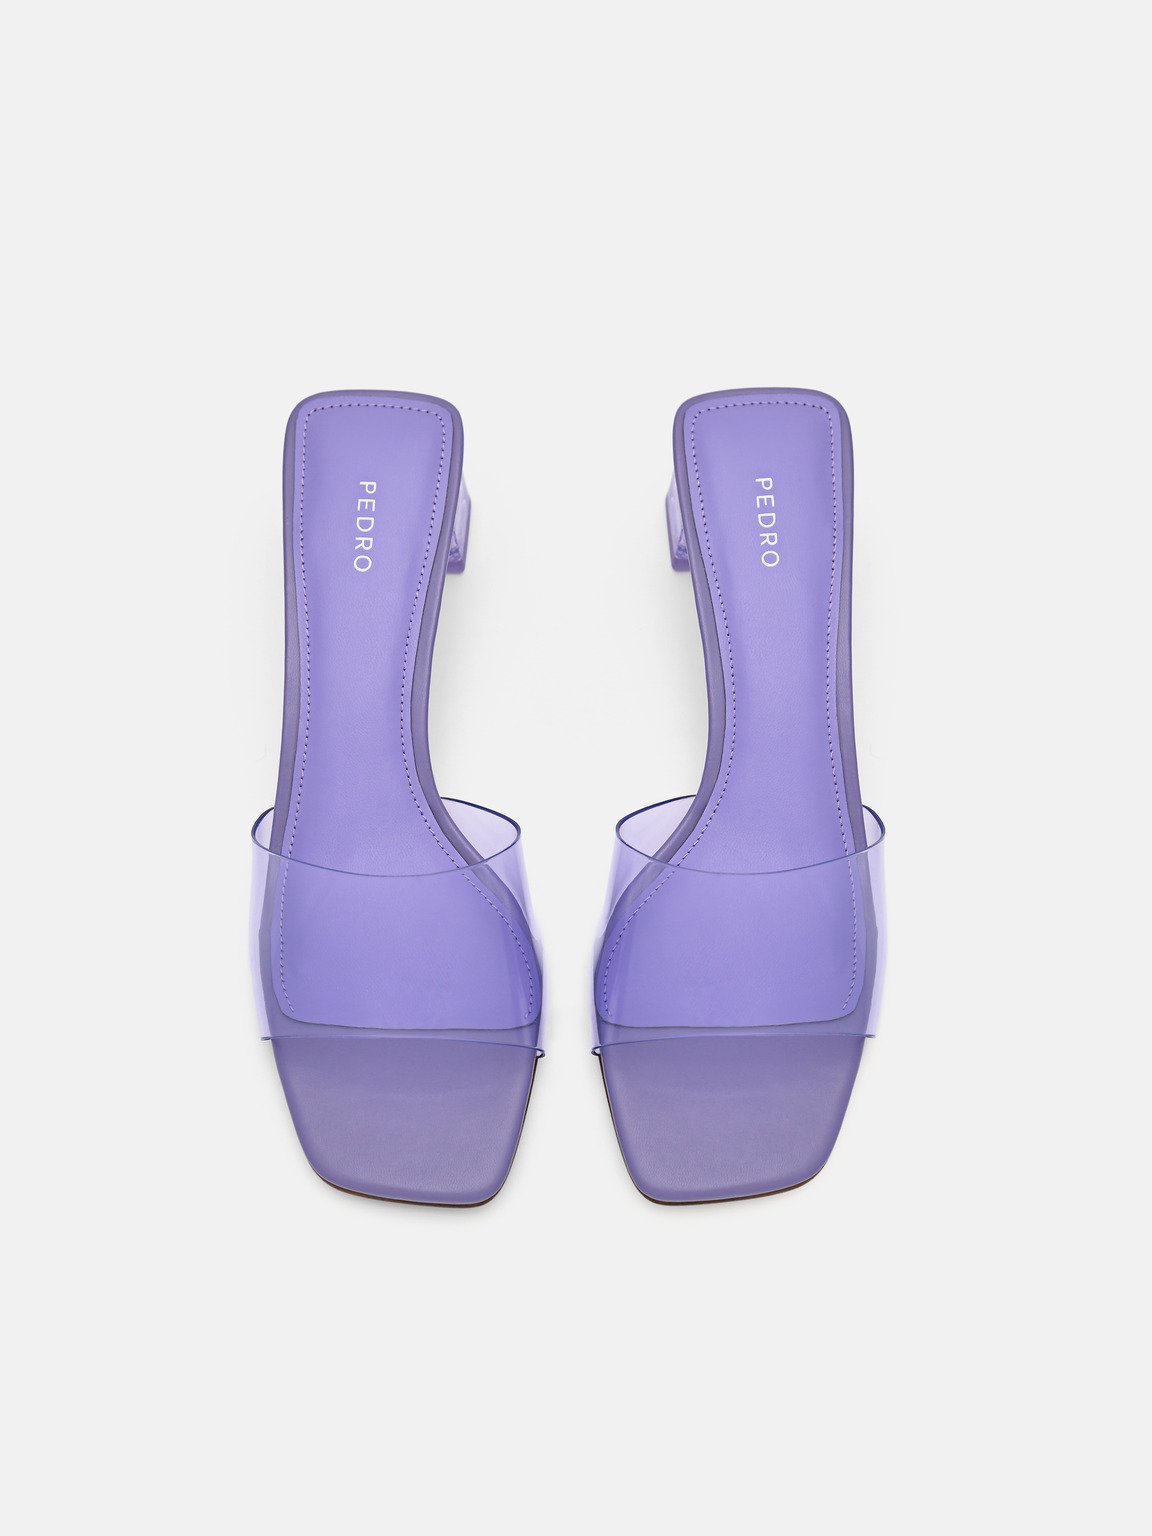 Megan高跟一腳蹬涼鞋, 紫羅蘭色